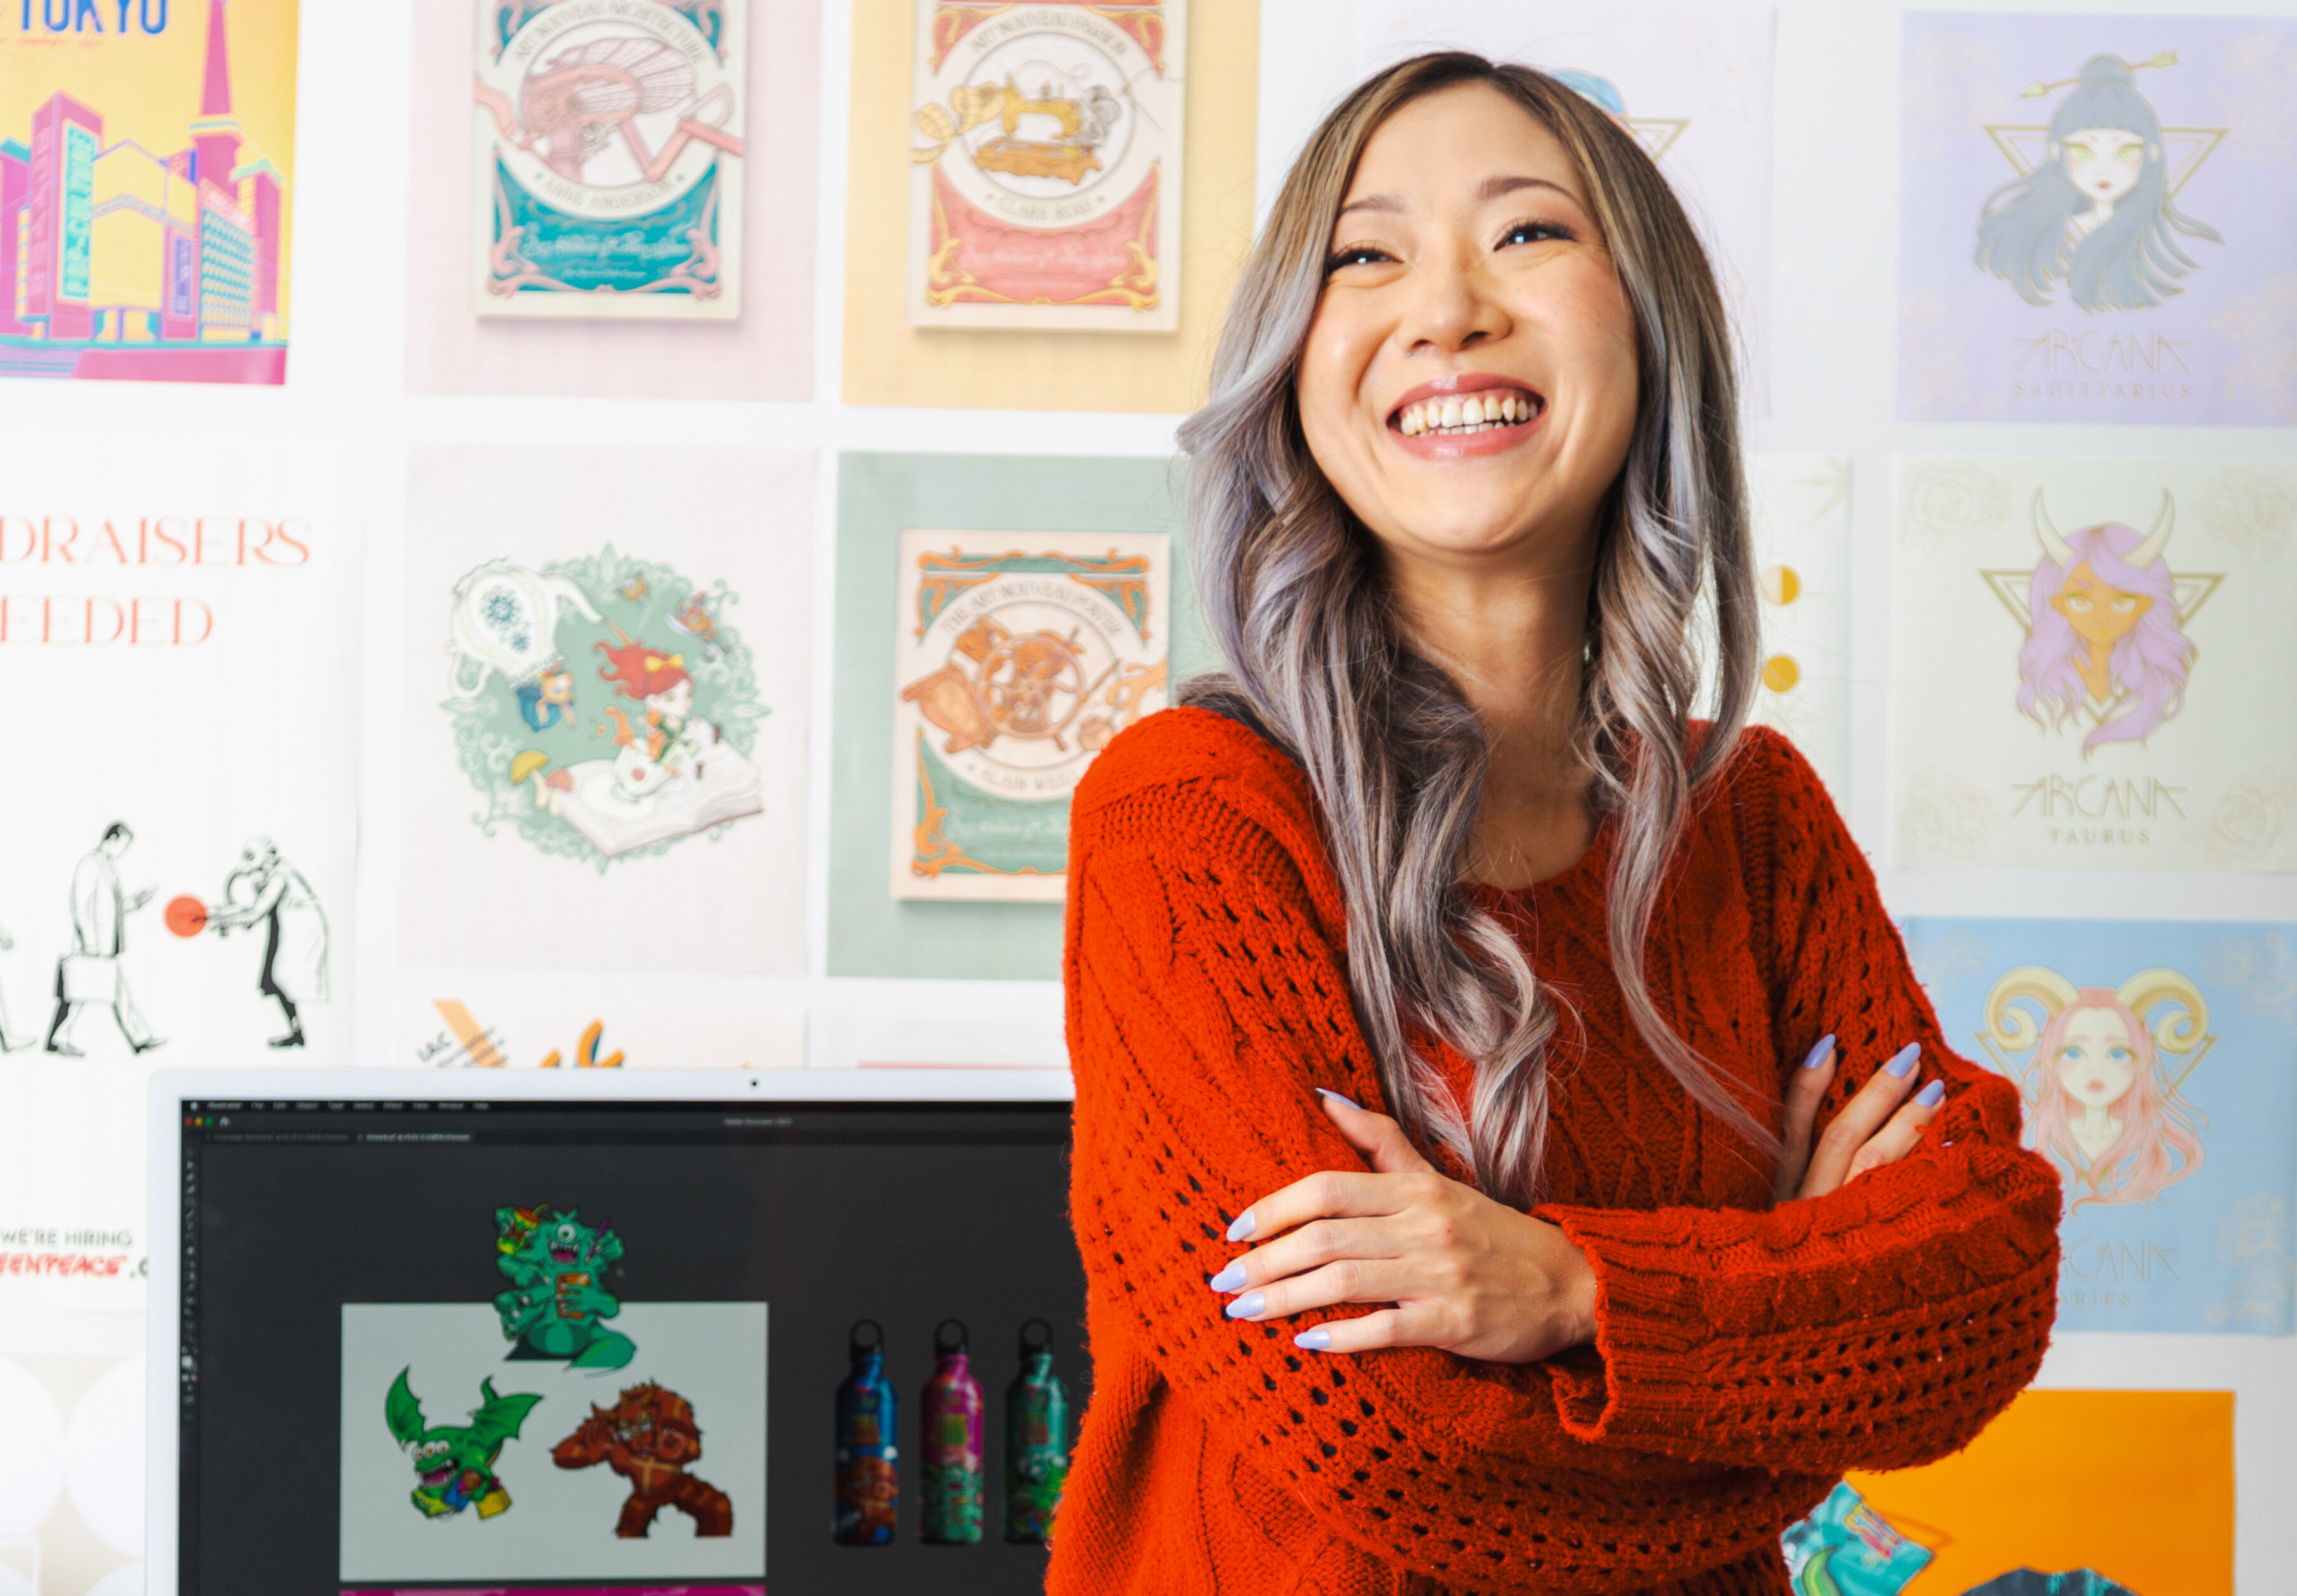 Une artiste joyeuse aux cheveux argentés en pull rouge se tient dans son atelier entourée d'illustrations colorées.